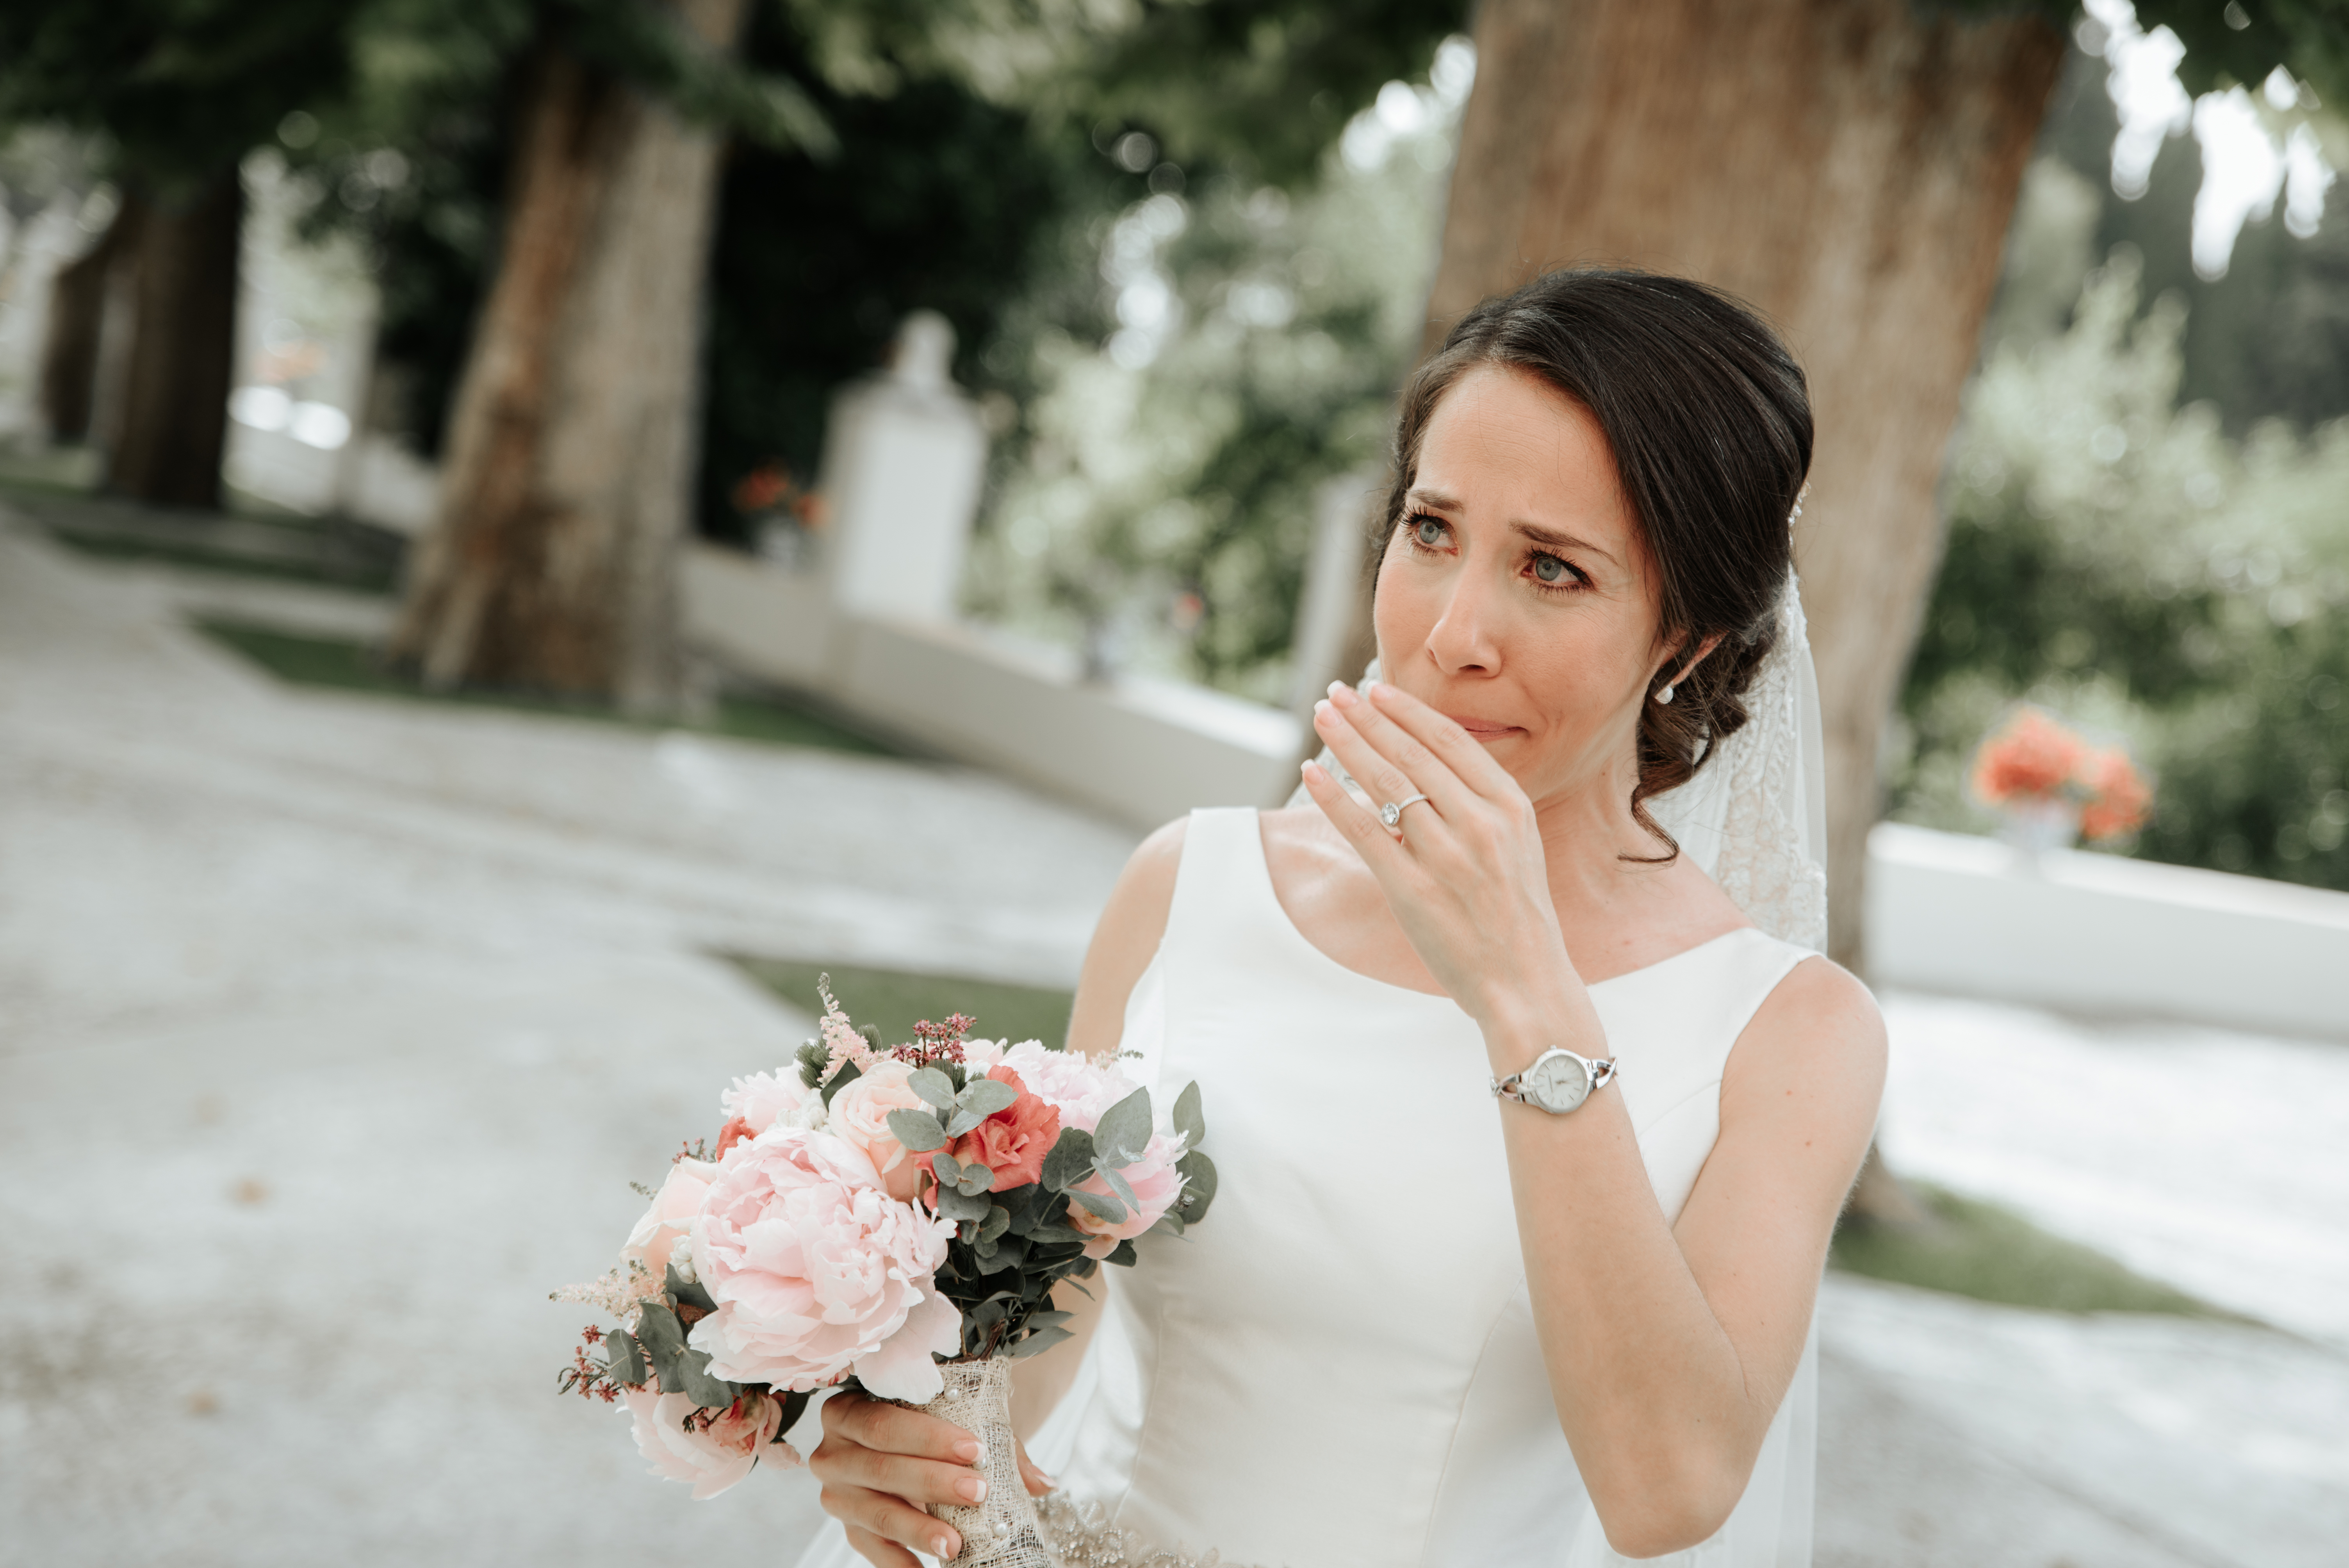 Eine wunderschöne brünette Braut ist weinend abgebildet | Quelle: Shutterstock